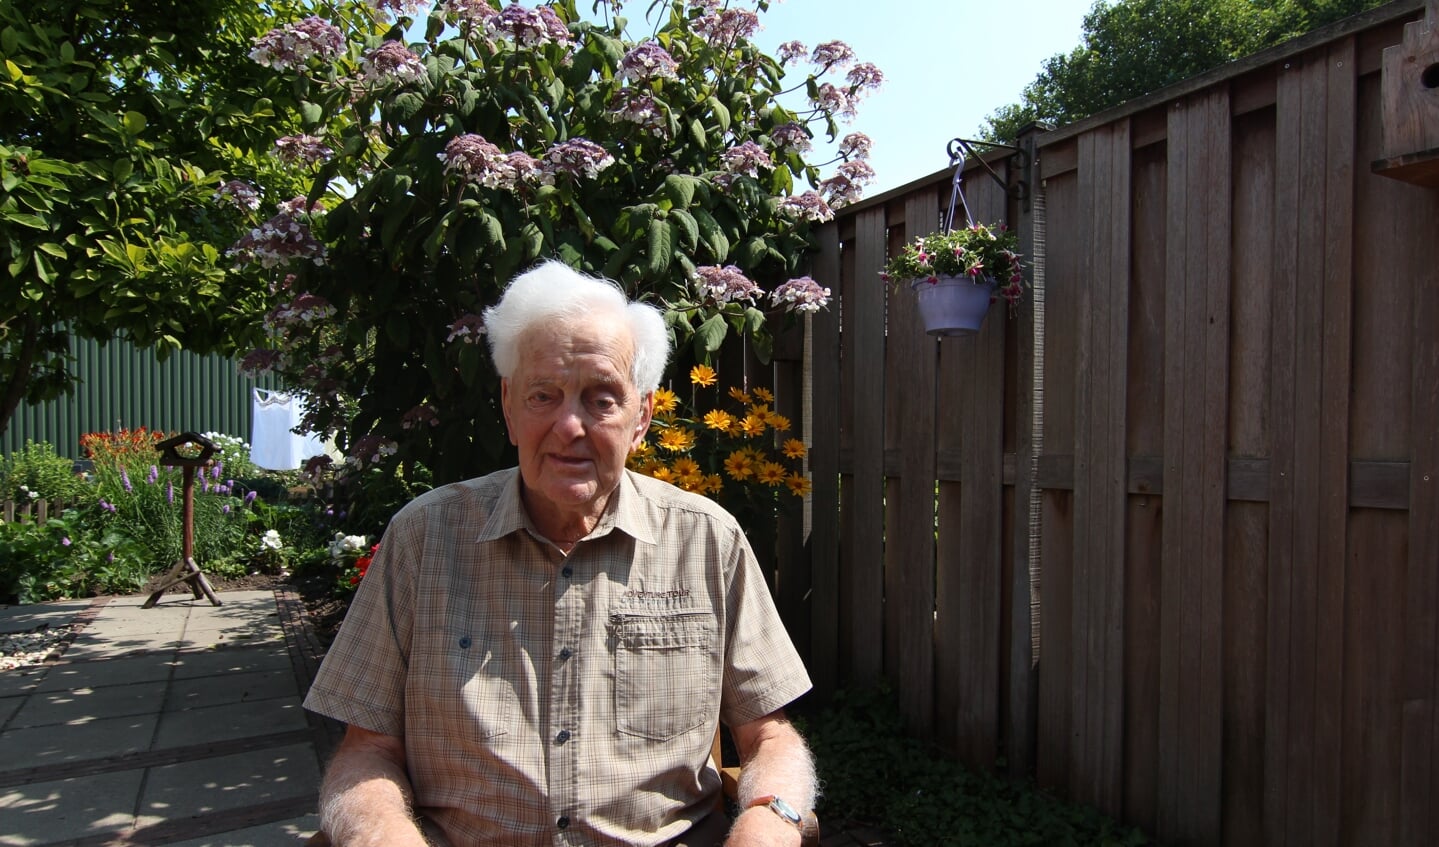 De 95 jarige de Groot op een zonnige (verjaar-)dag in zijn achtertuin.